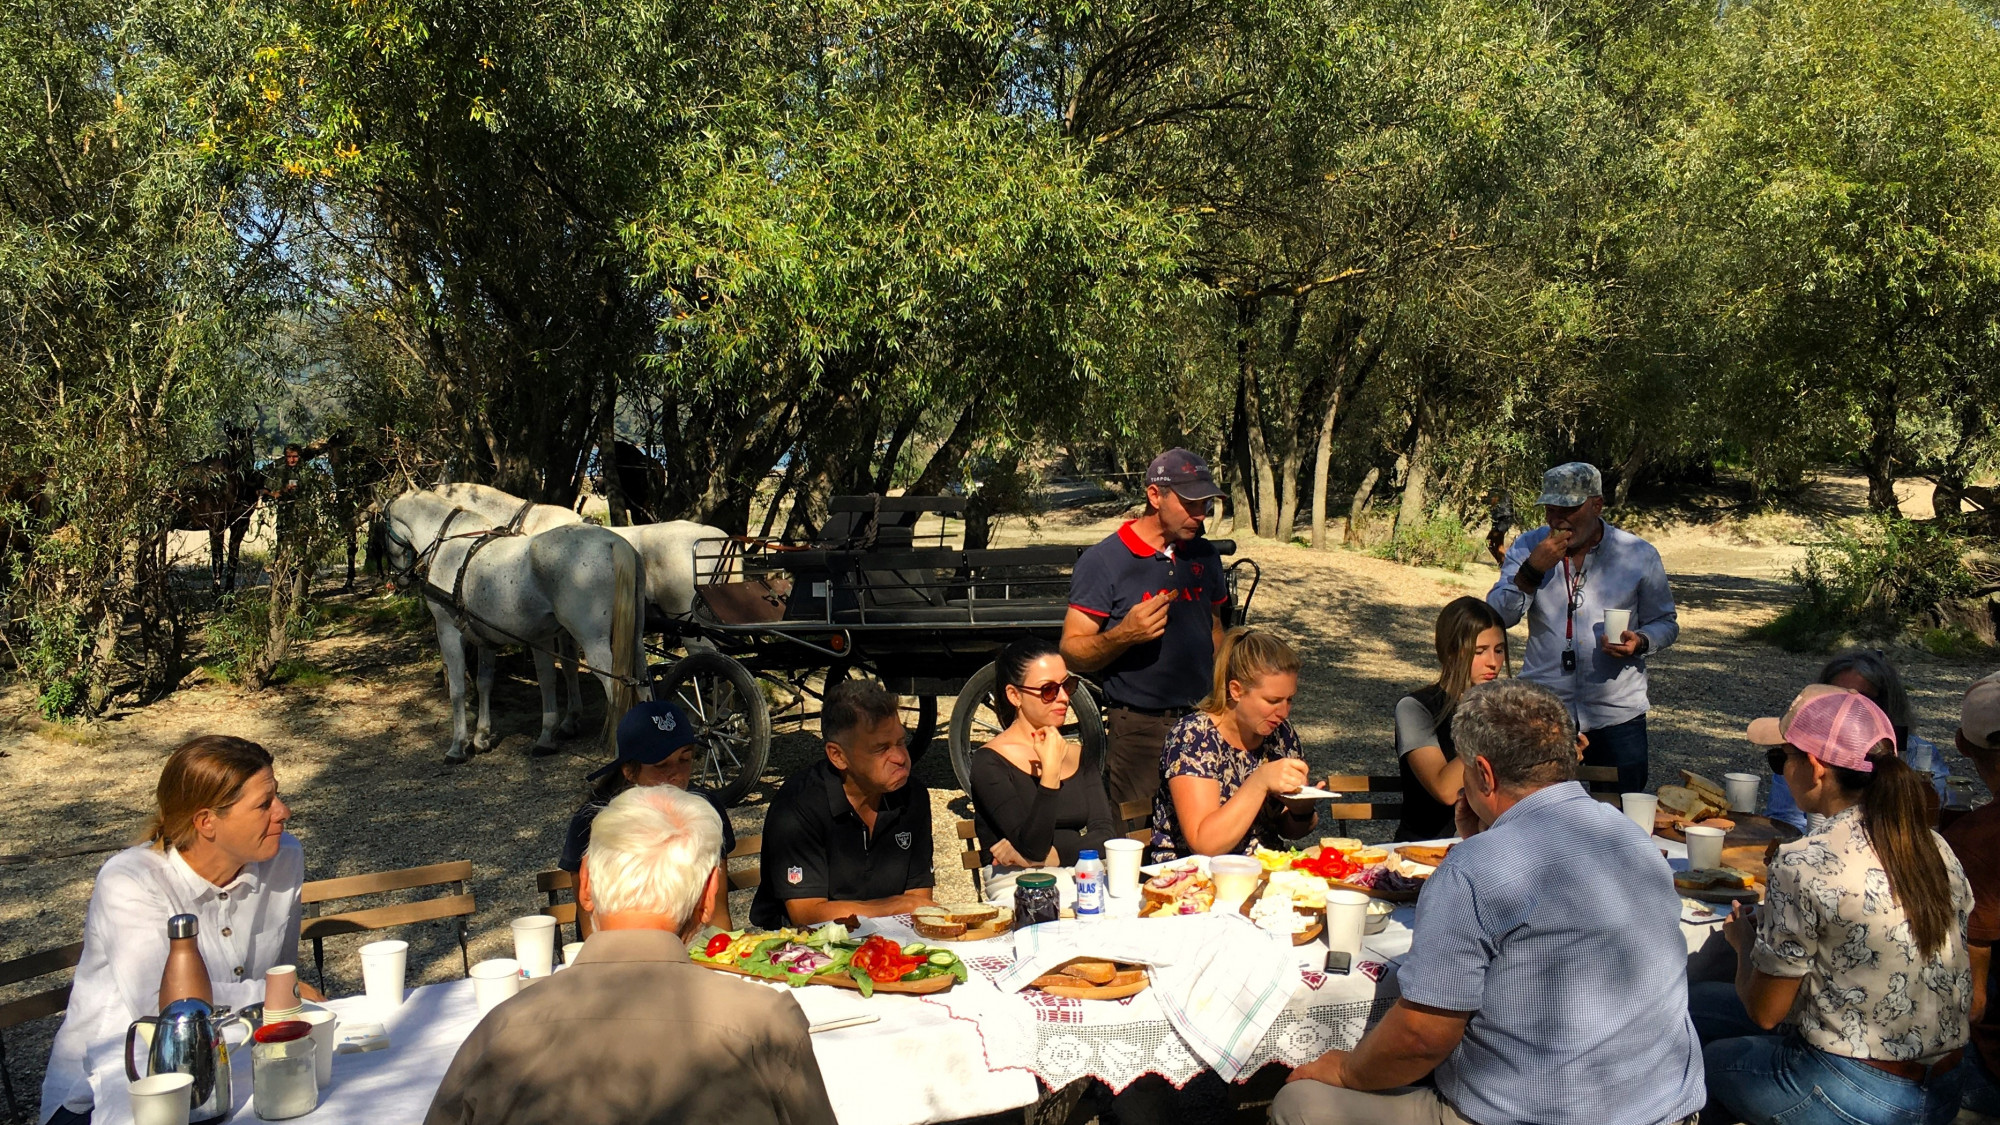 Piknik a szigetspiccen a 2023. szeptember 28-án a budapesti lovas körgyűrűt bemutató túrán